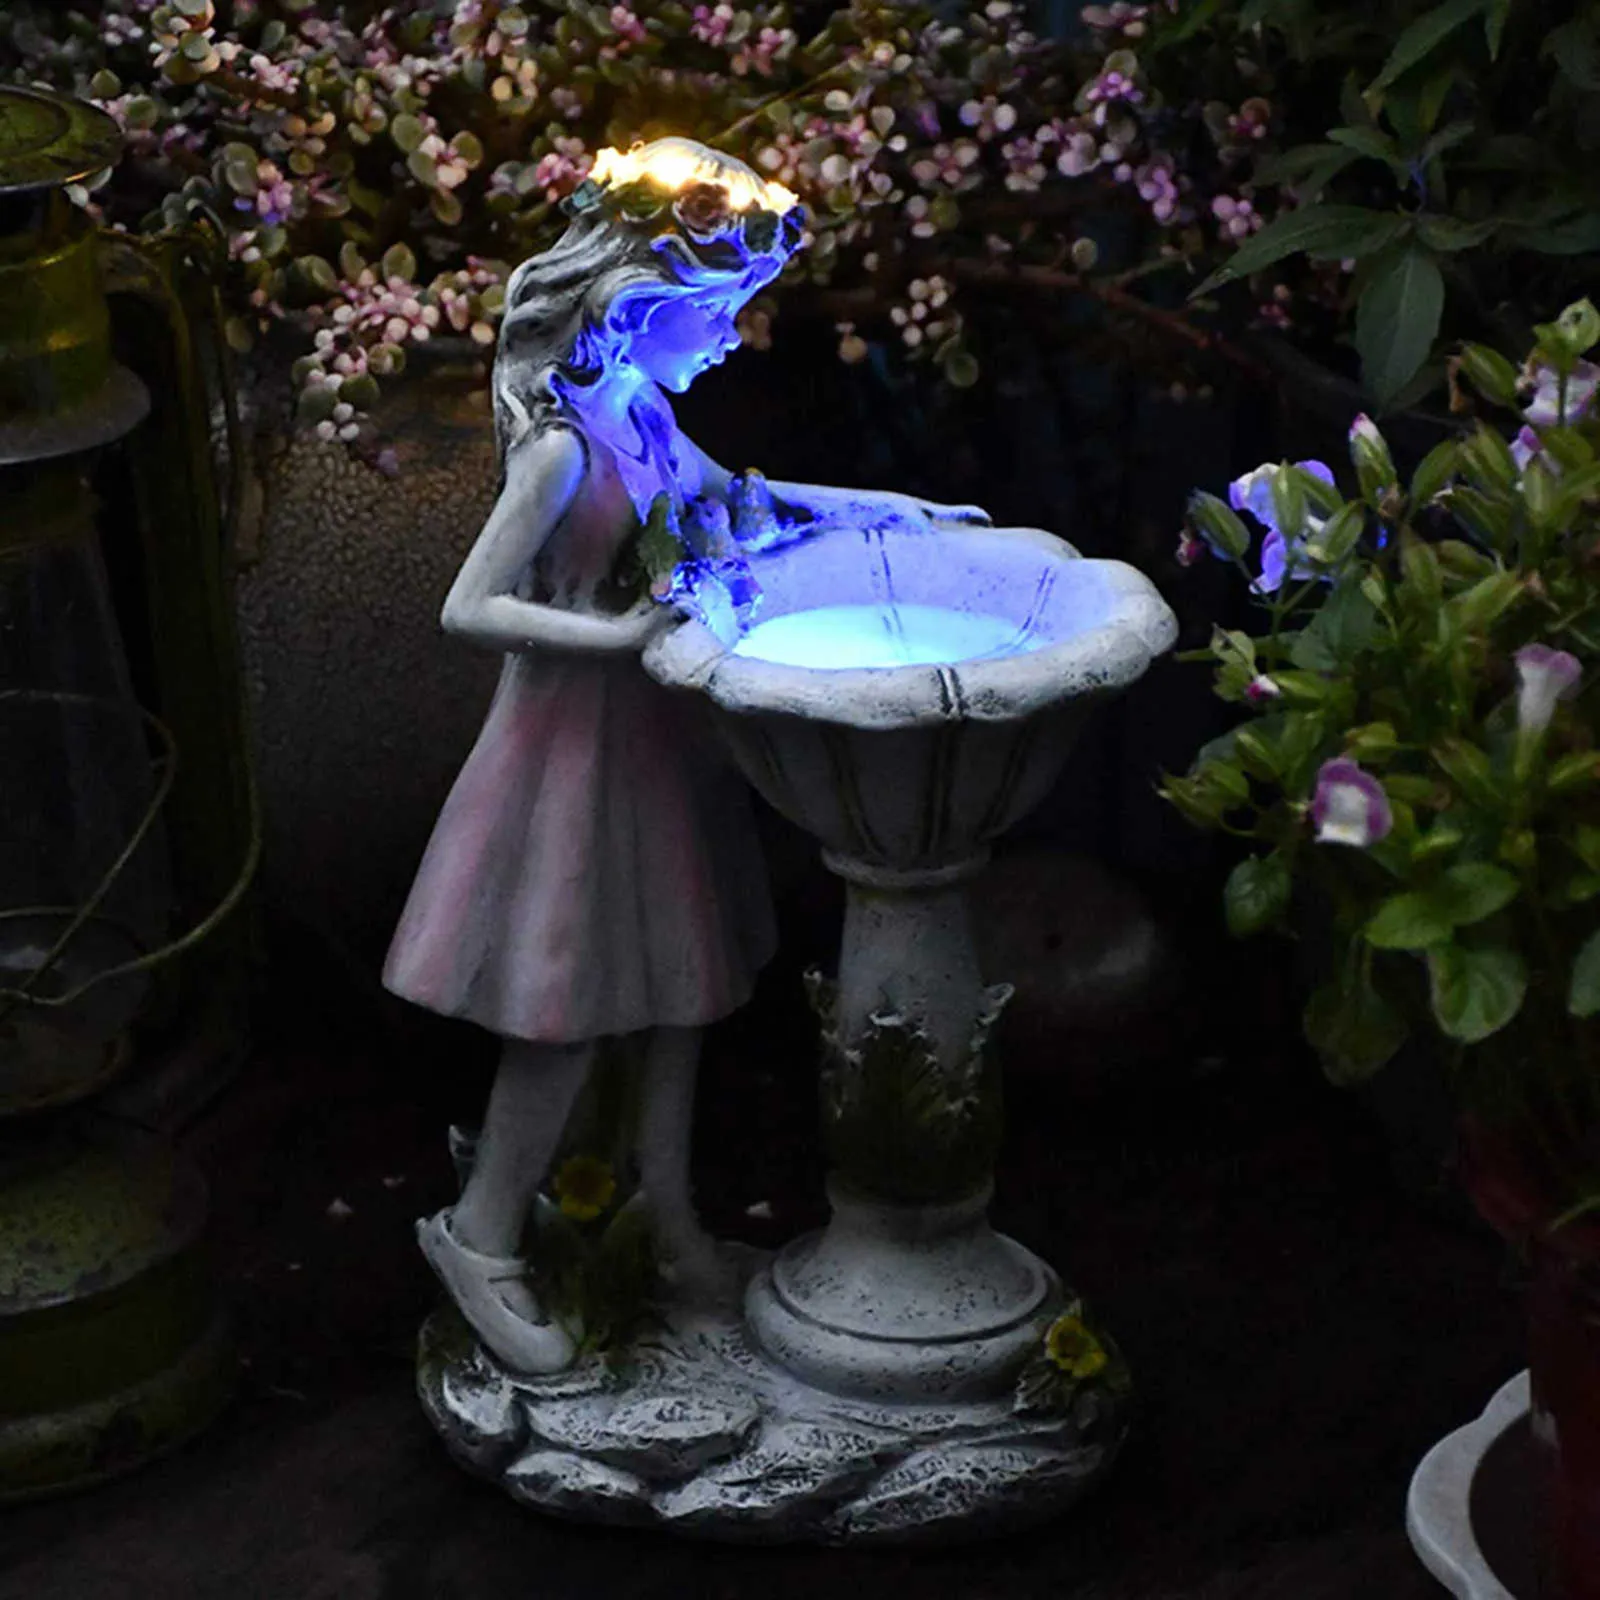 Flower Fairy Solar Decoration Harts Garden Statue Solar Light Glow in the Dark Yard Outdoor Sculpture Angel Figure Garden Decor Q0294K